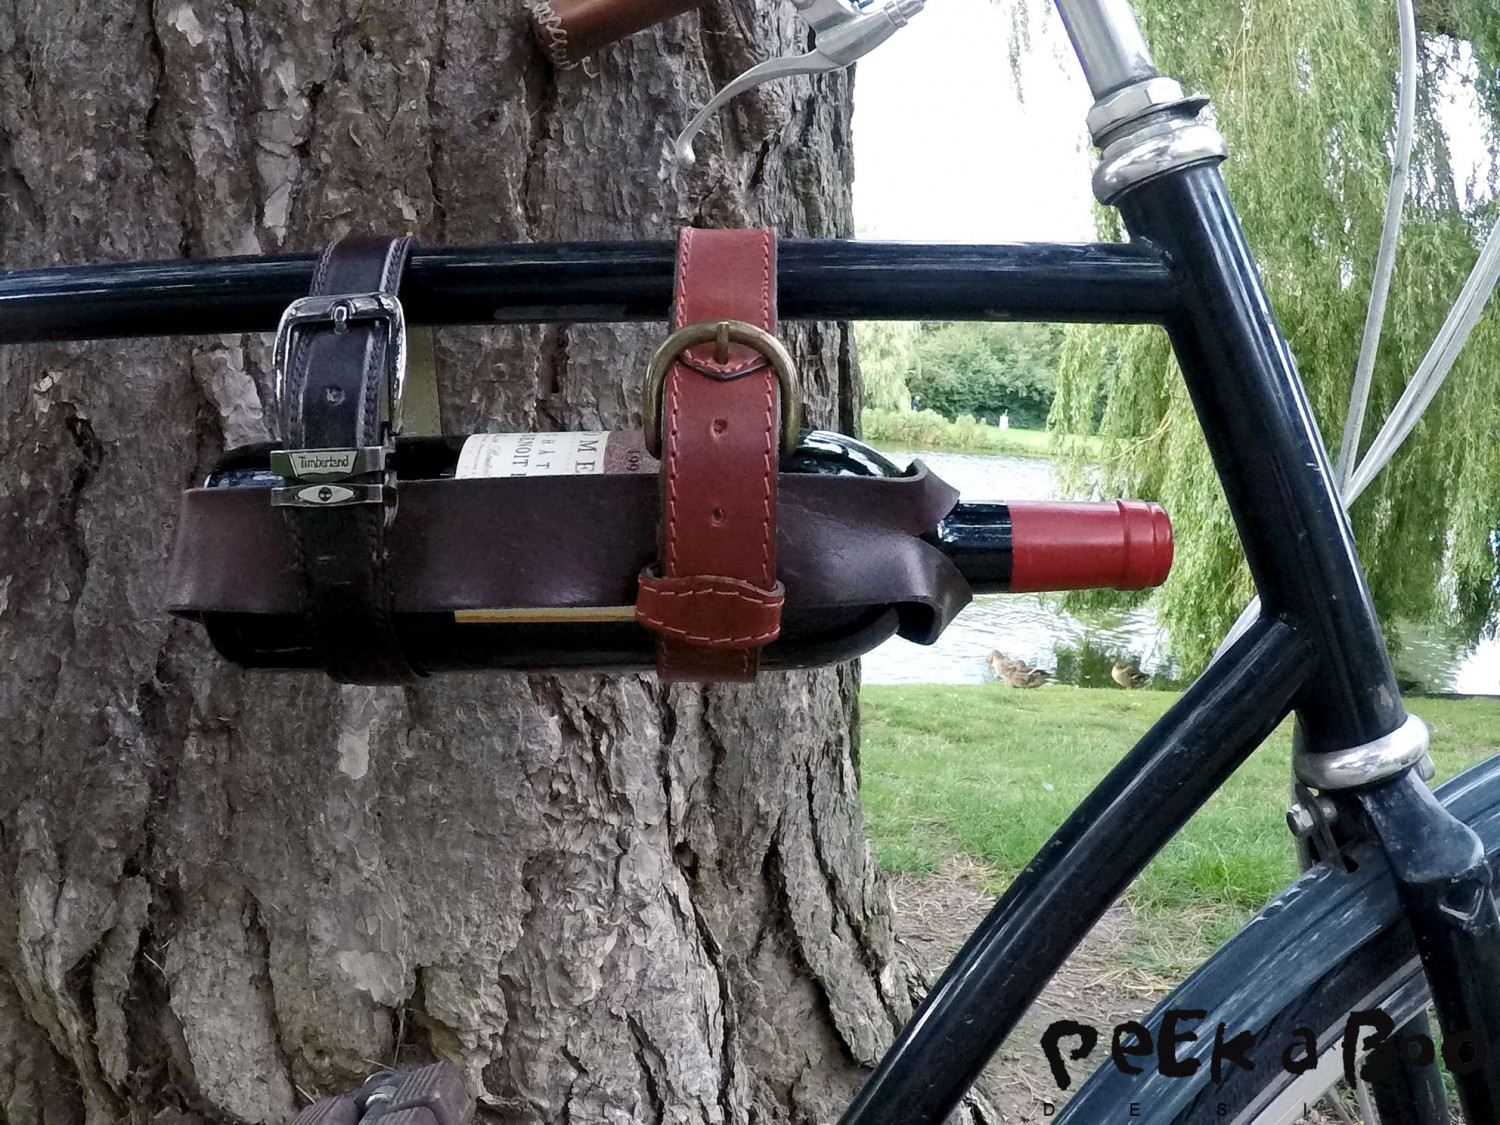 What every bike needs - wine holder - wine rack